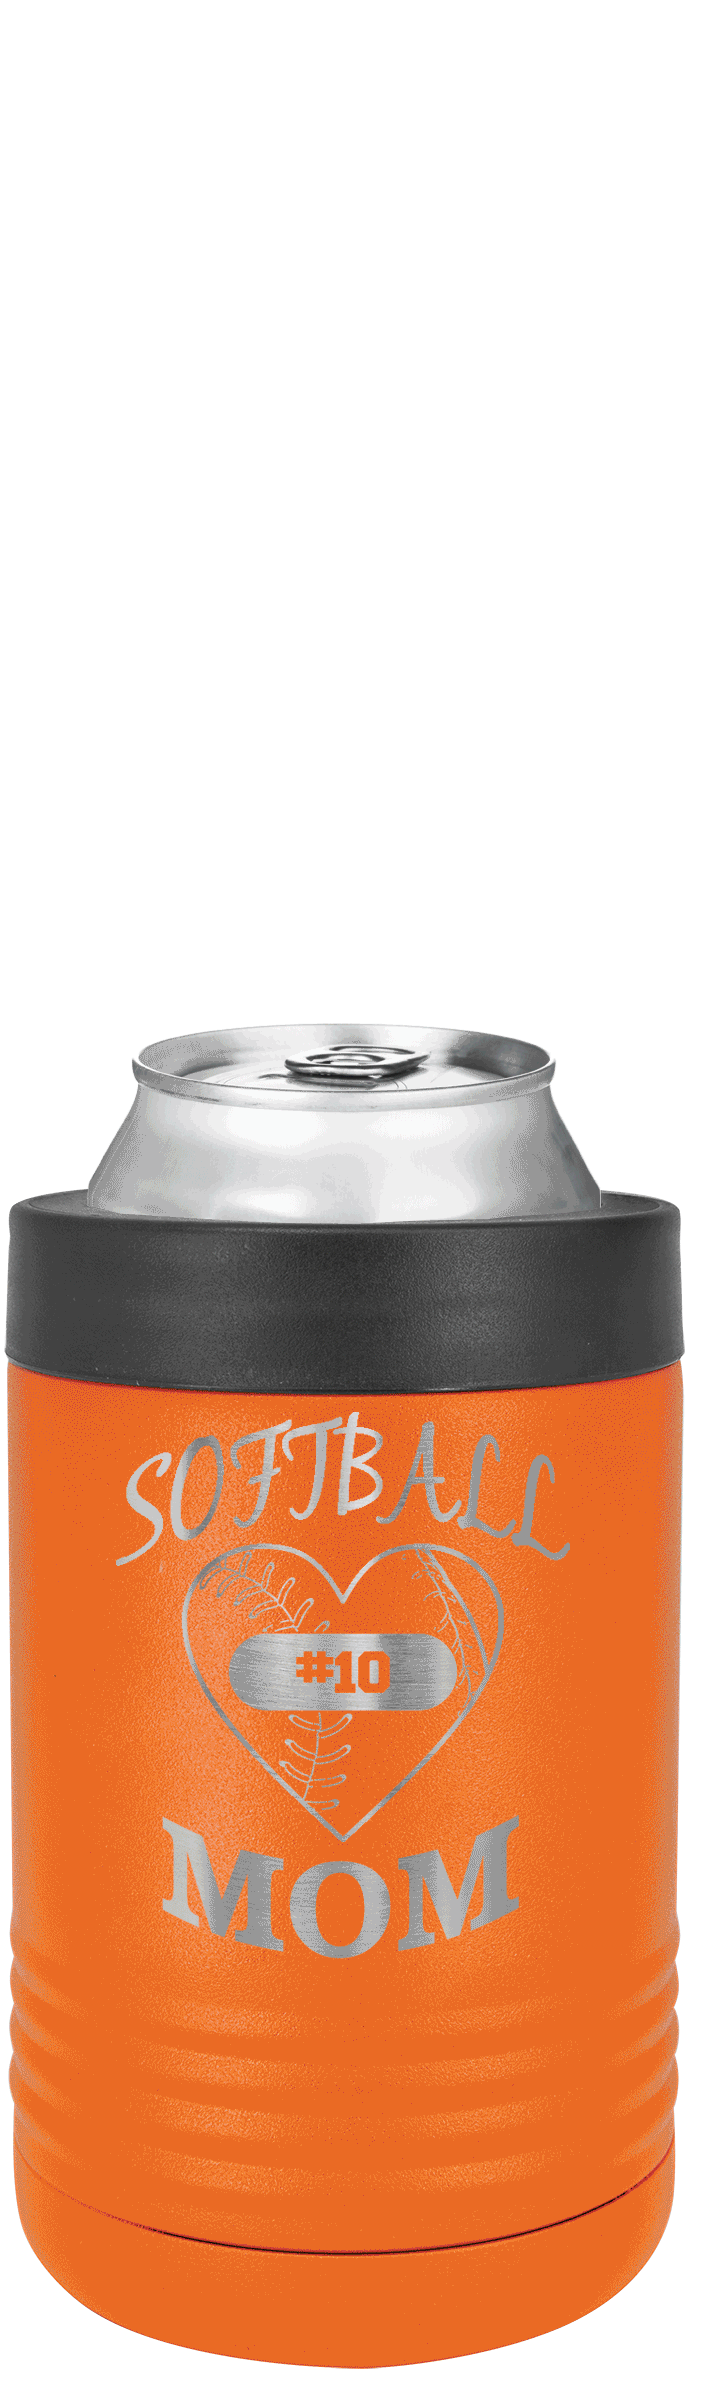 Softball Love Beverage Holder